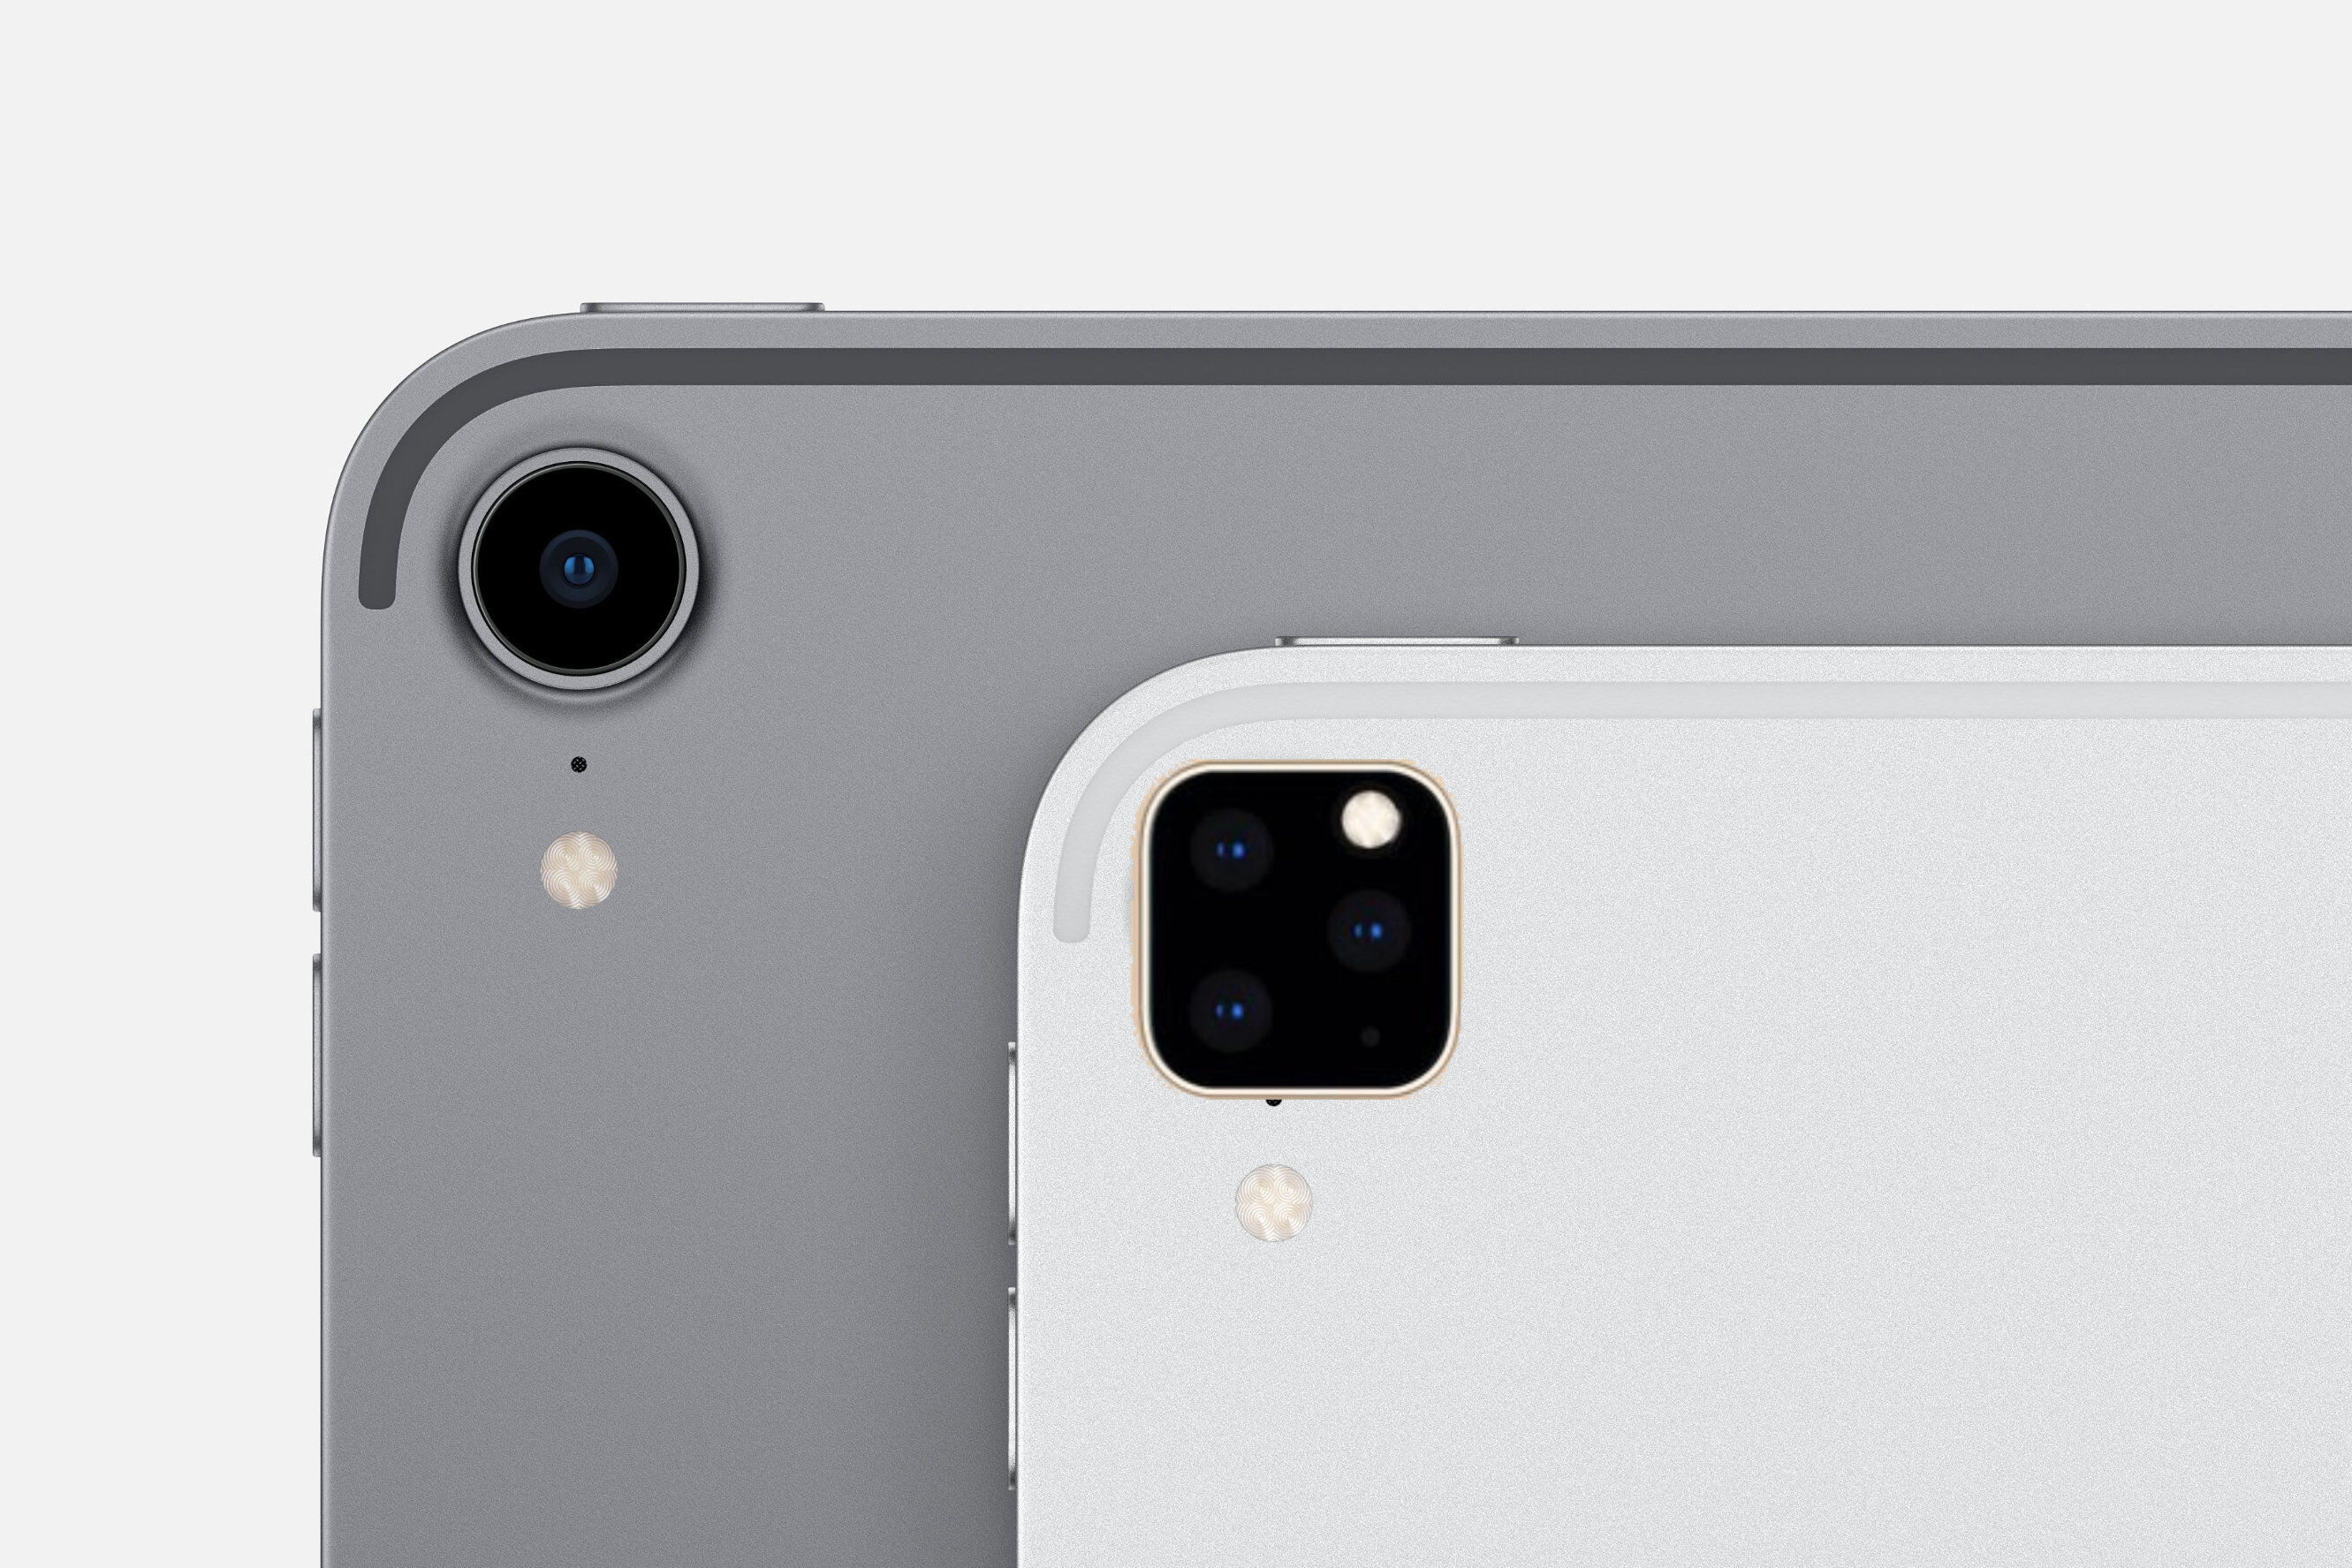 2019年 iPad Pro 将配备类似 iPhone 11的三摄像头